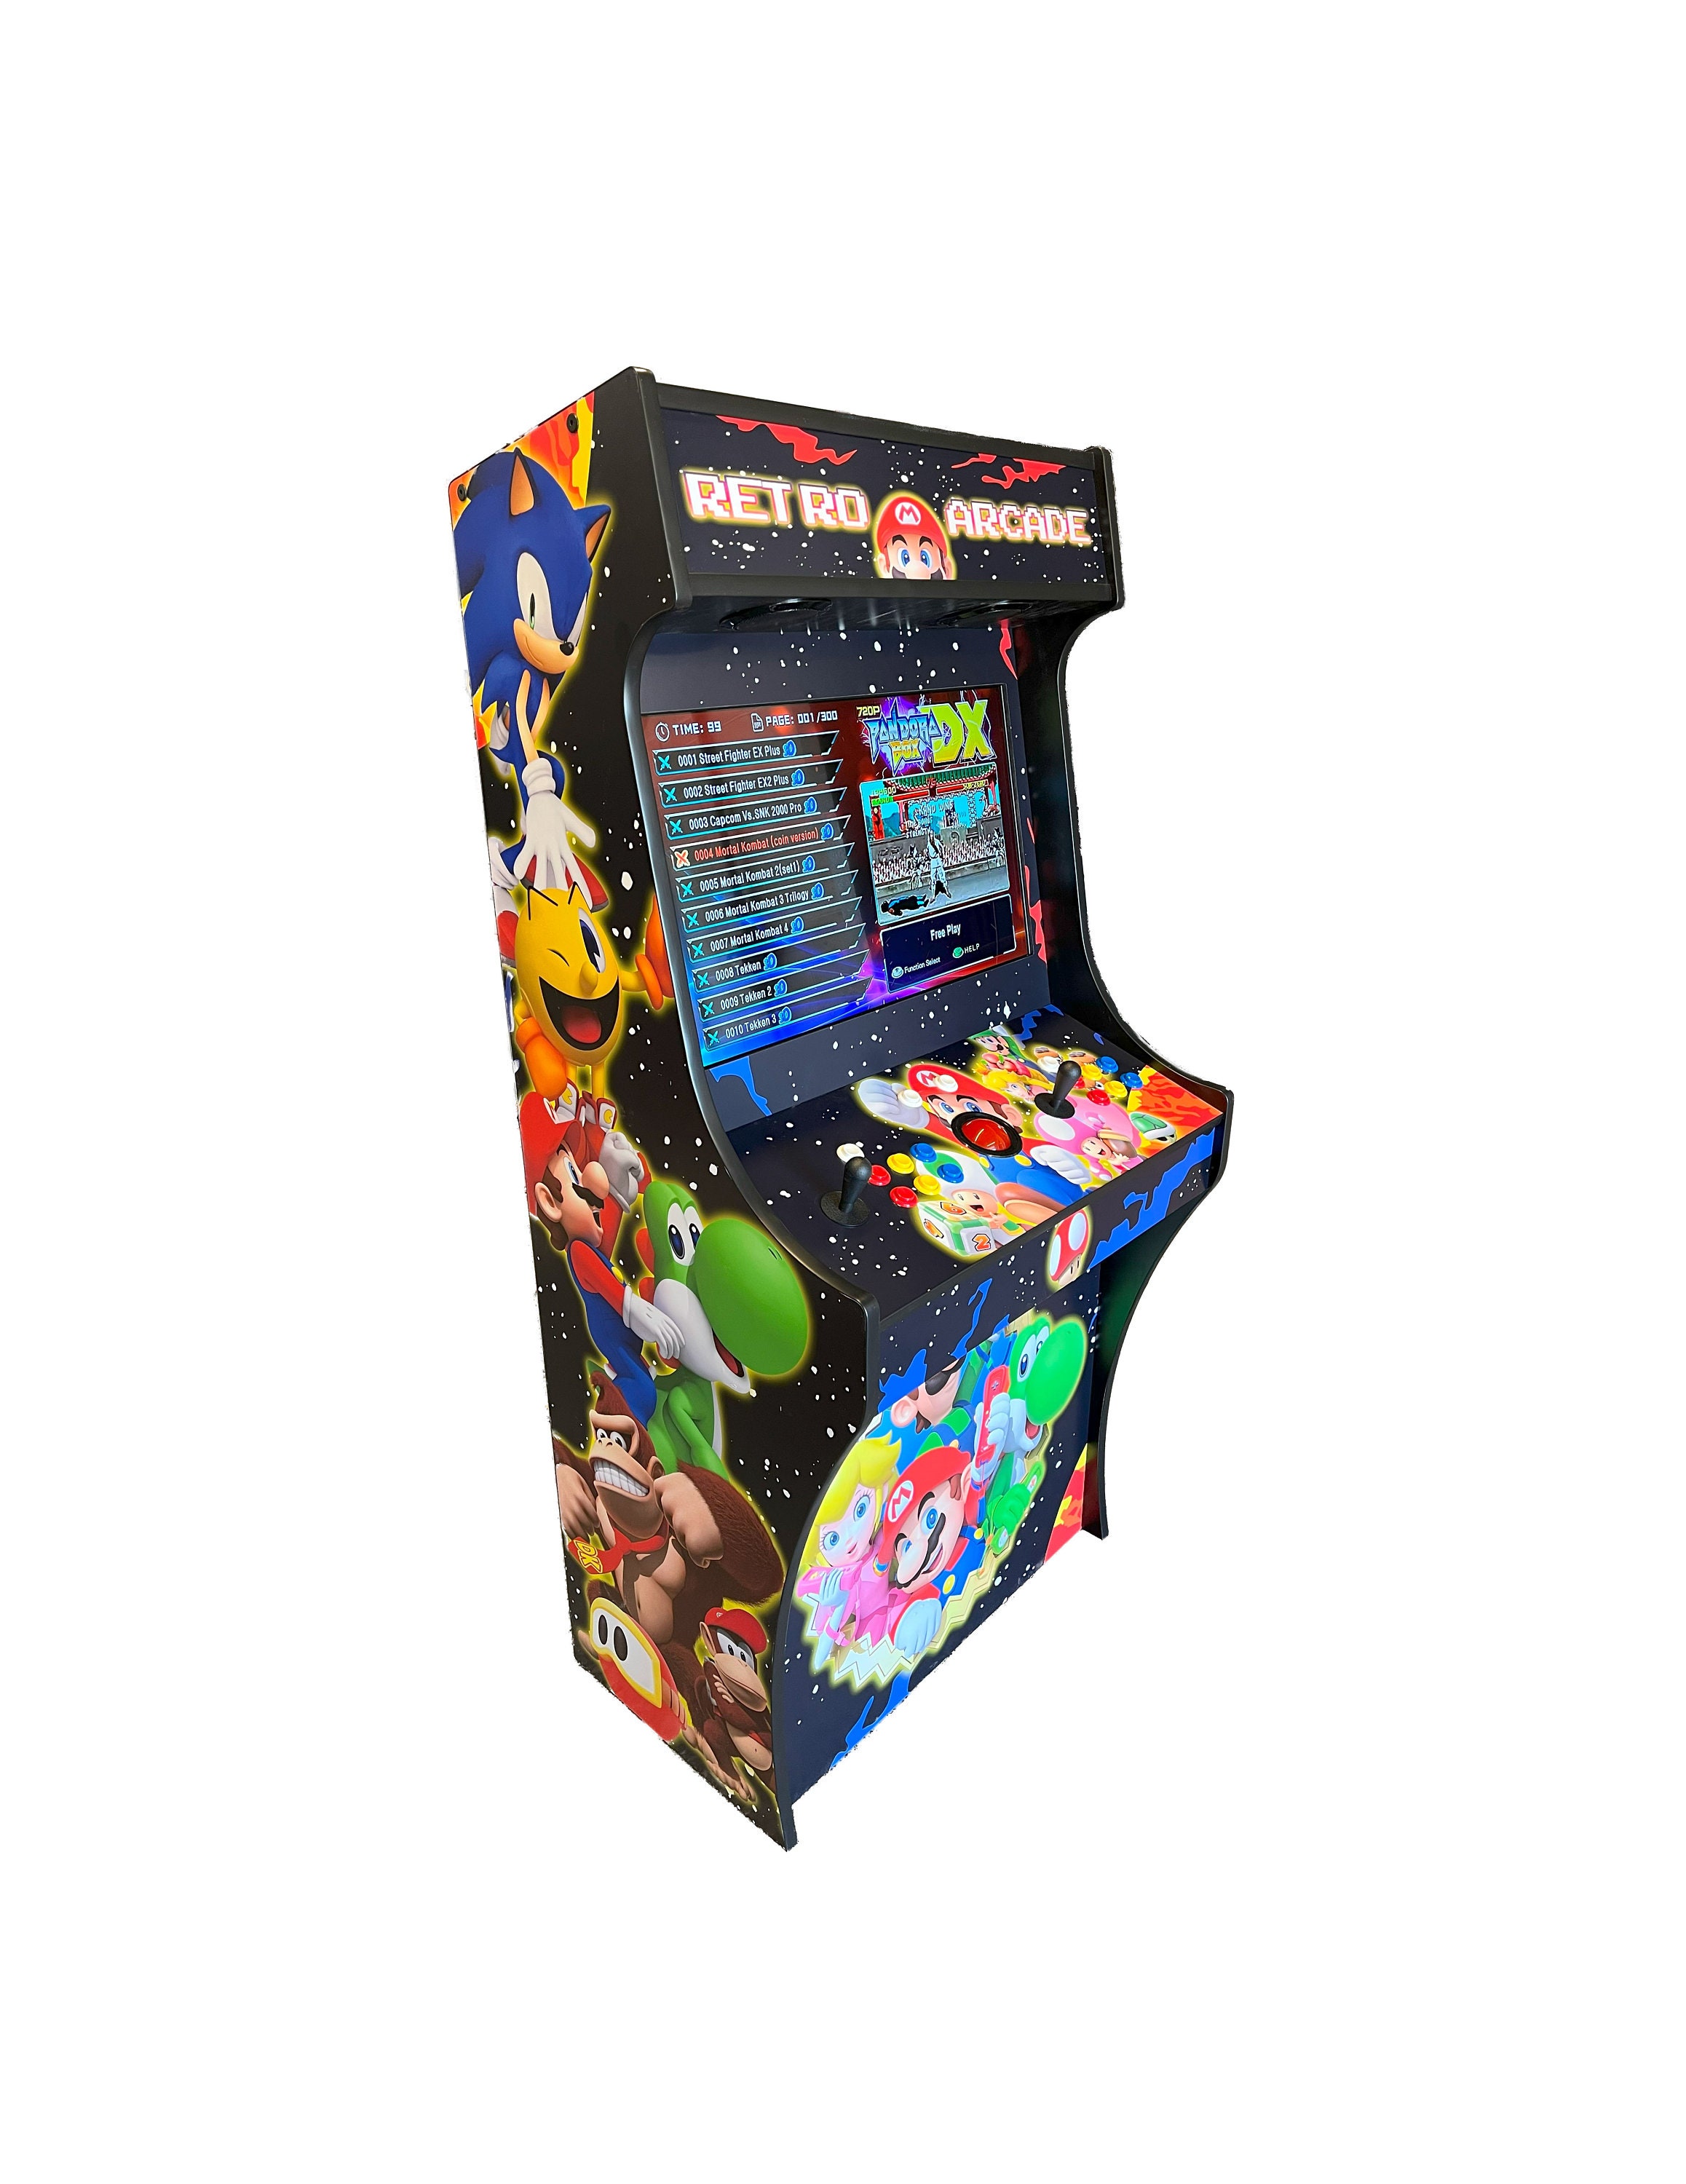 Retro Arcade Machine Multiplayer Built In 8000 Games